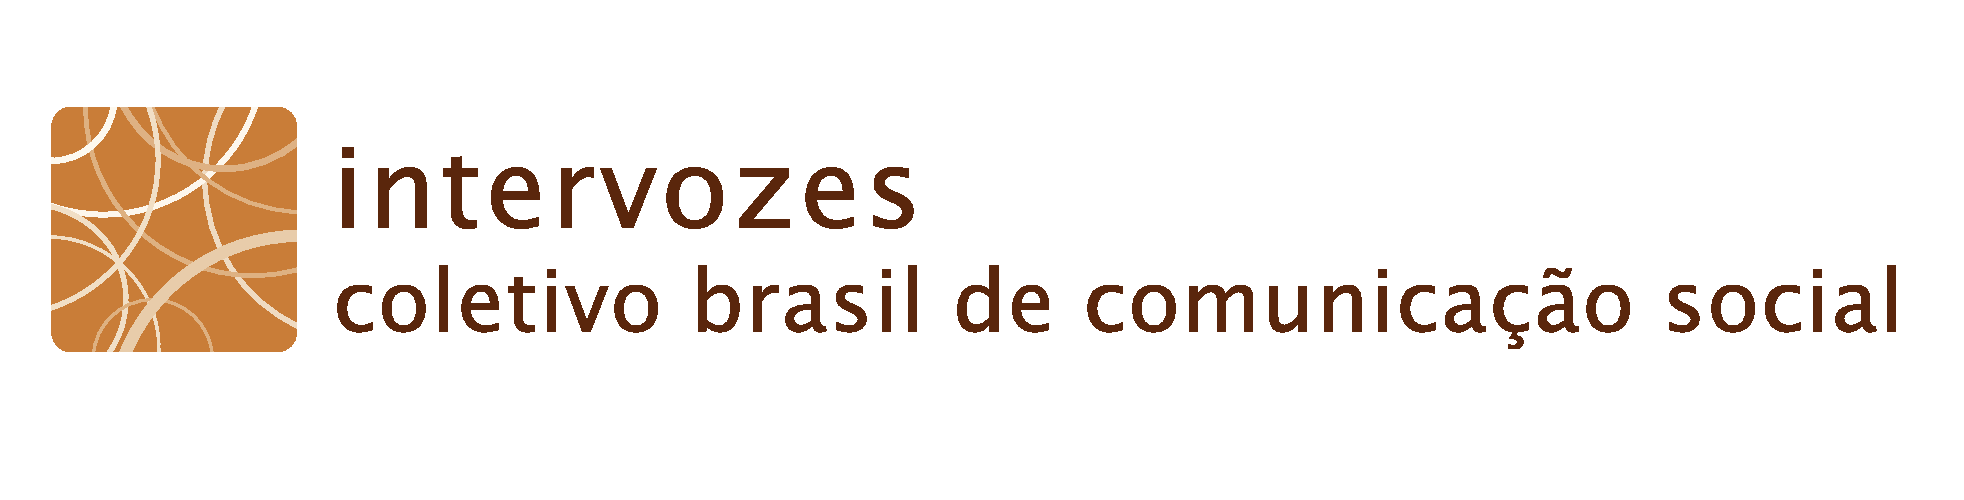 Intervozes - Coletivo Brasil de Comunicação Social